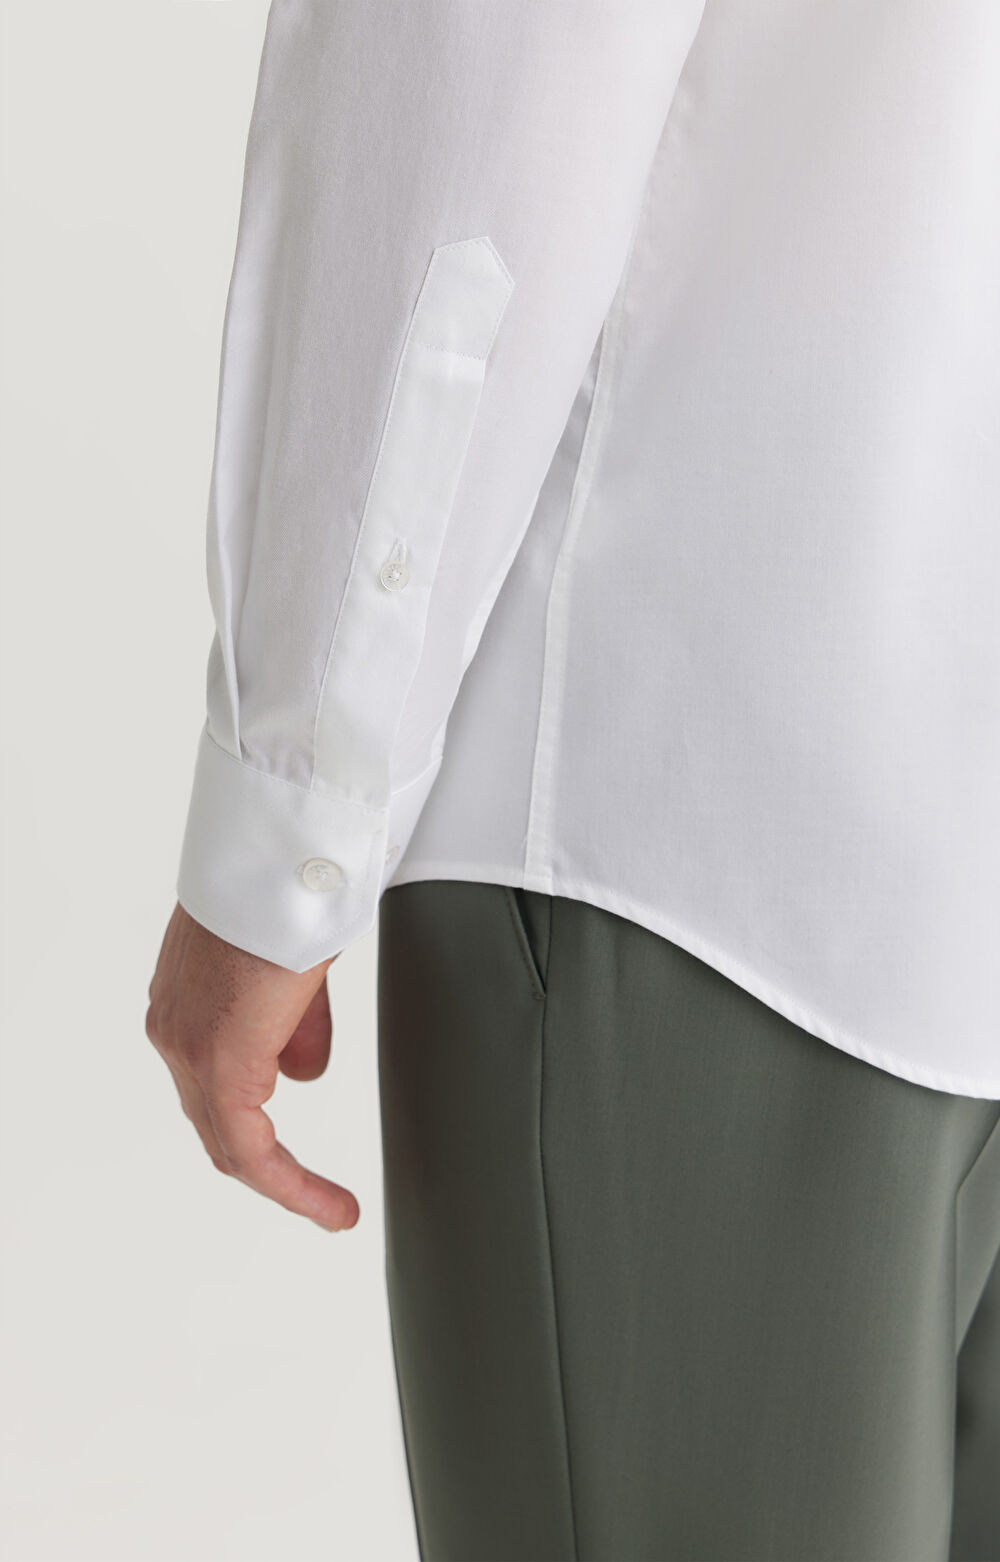 Biała koszula slim fit z włoskiej bawełny